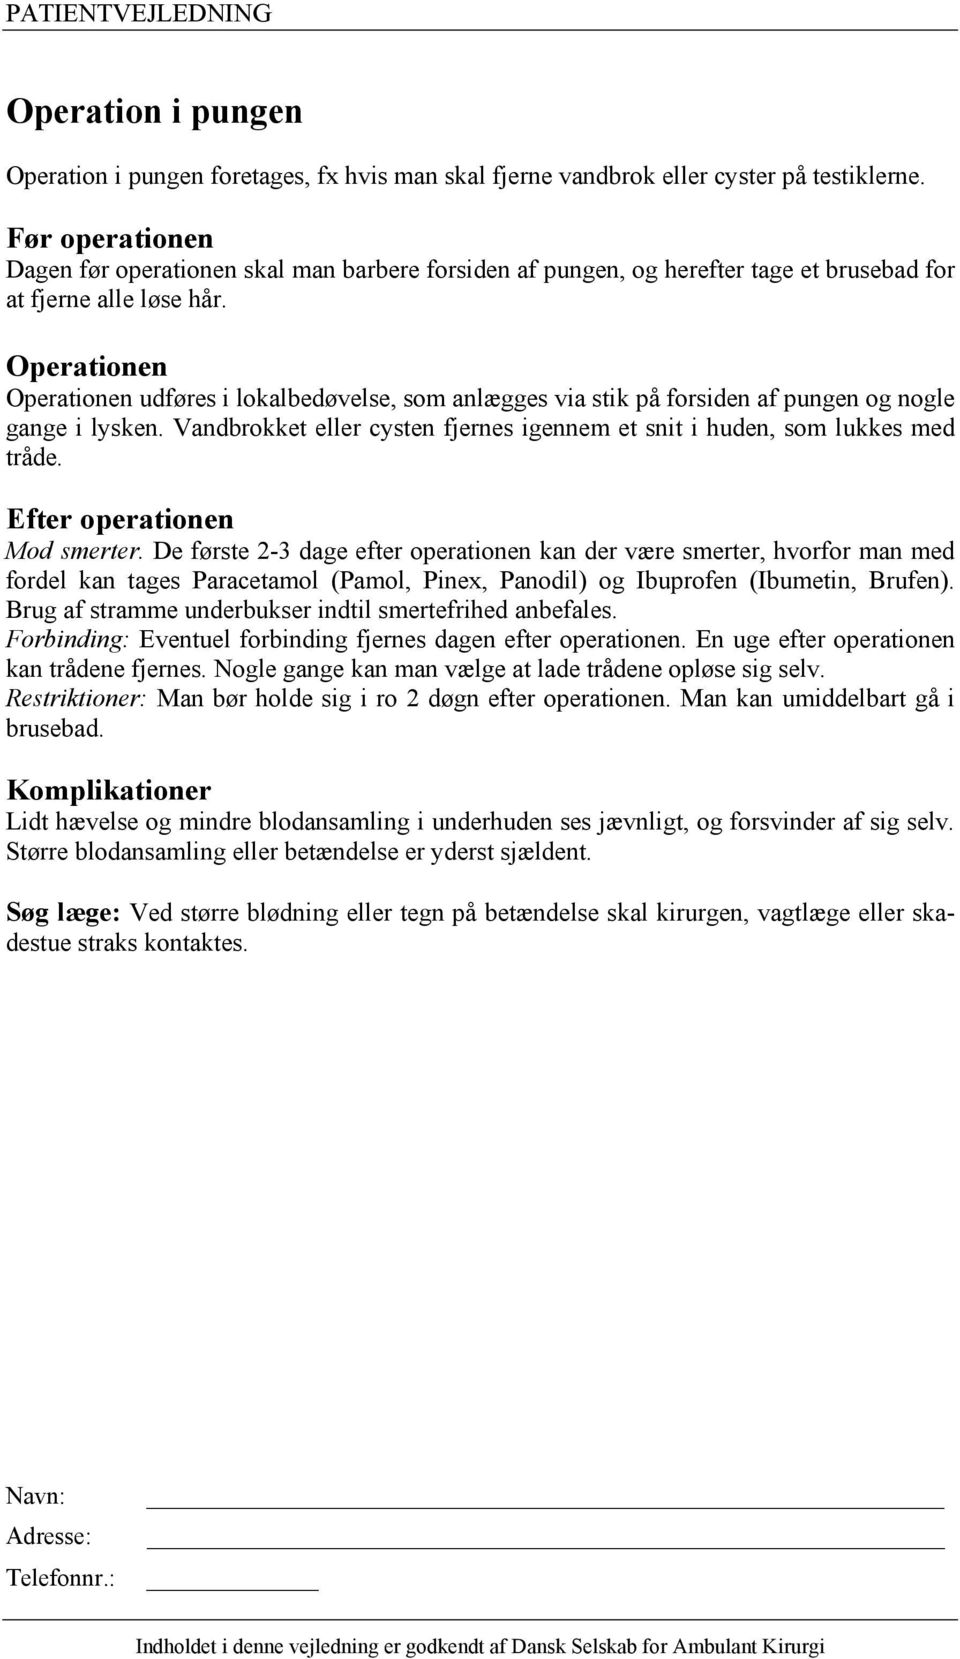 Kikkertundersøgelse af blæren (cystoskopi) - PDF Free Download